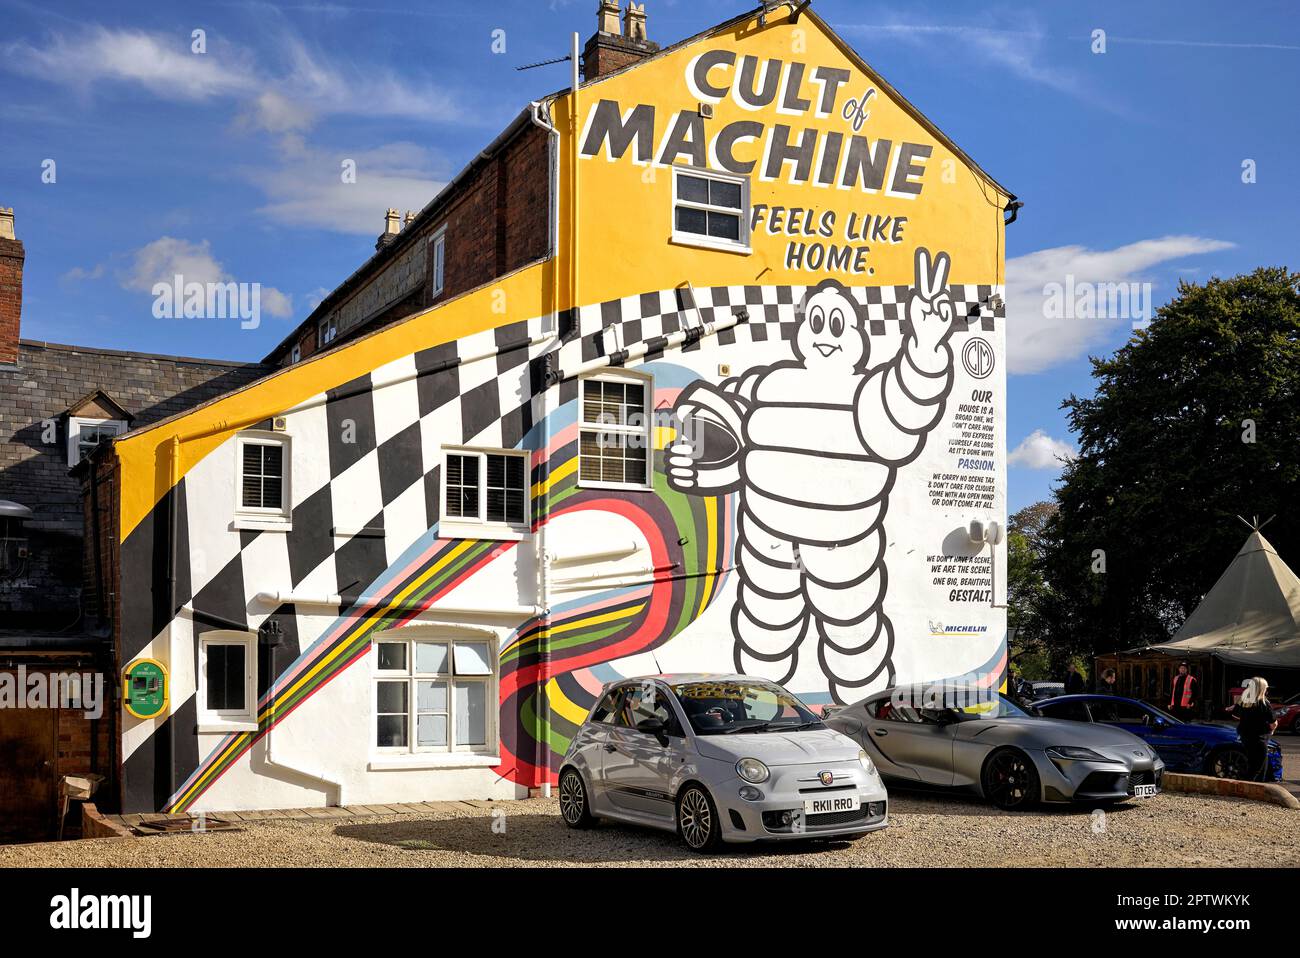 Café und Automatencafé für Koffein und Automobile, ein Treffpunkt für Motorliebhaber. Stratford-upon-Avon, England, Großbritannien Stockfoto